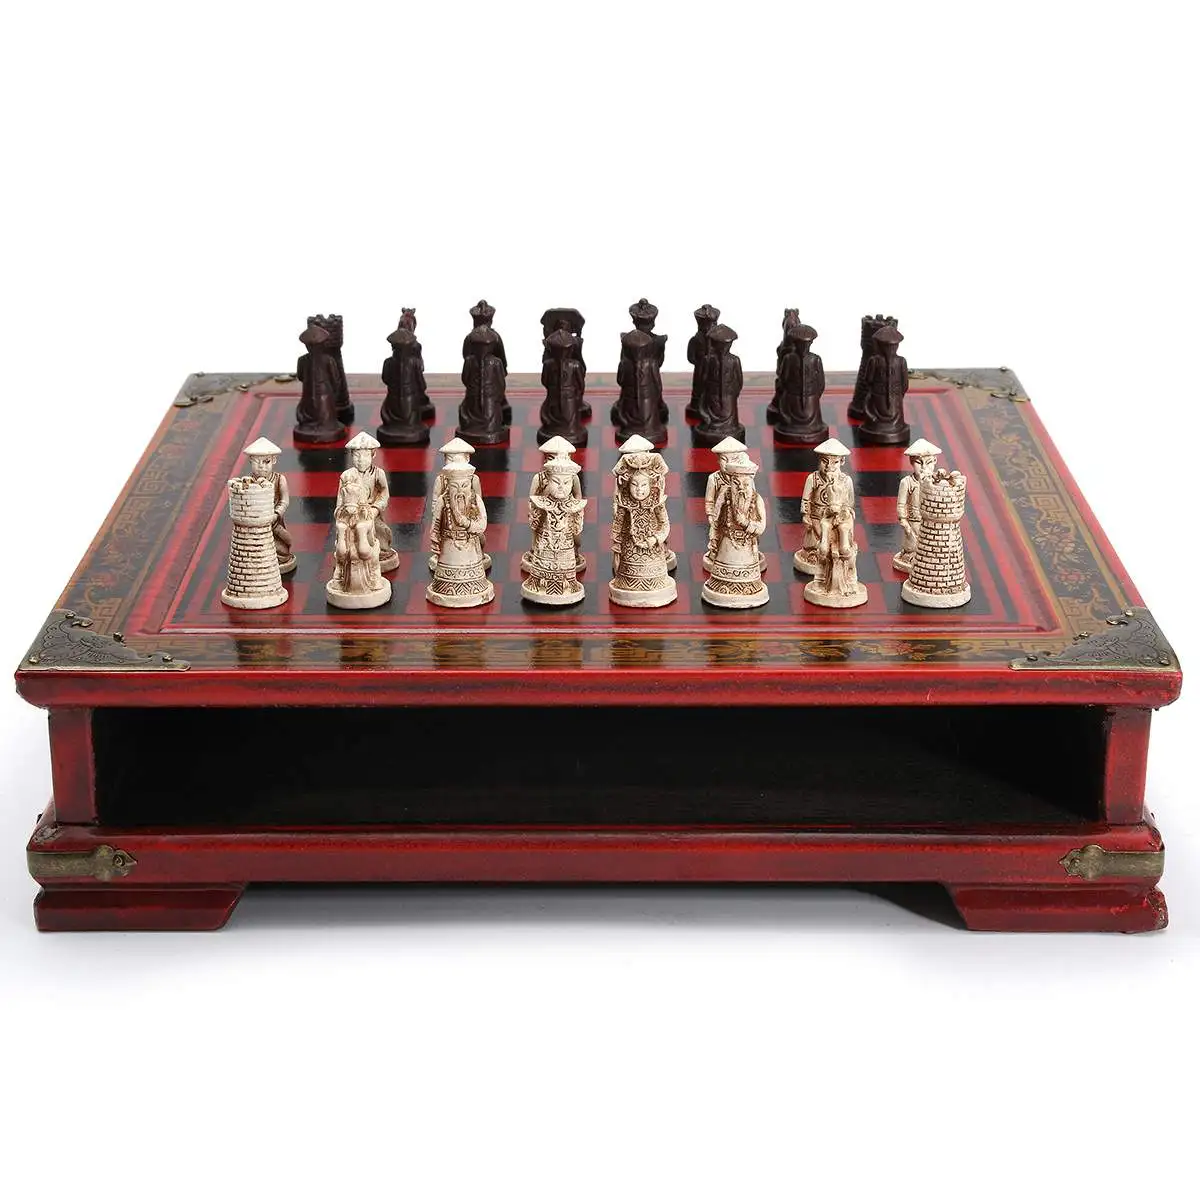 32 шт./компл. деревянный стол шахматы китайский Шахматные игры смолы шахматная фигура на Рождество, день рождения, премиальные подарки развлечение настольная игра